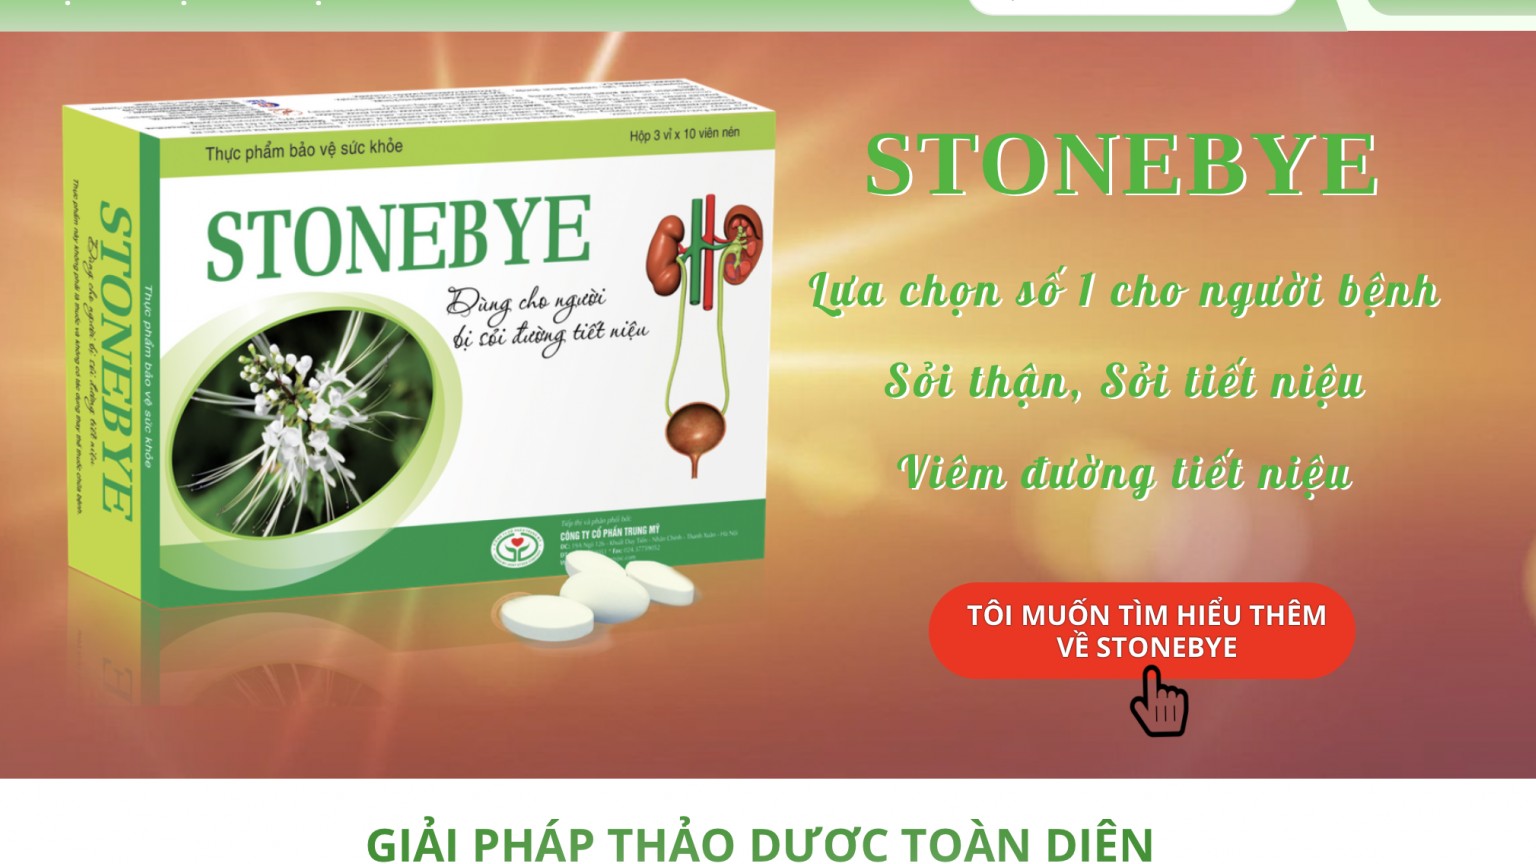 TPBVSK Stonebye quảng cáo “nổ” không điểm dừng